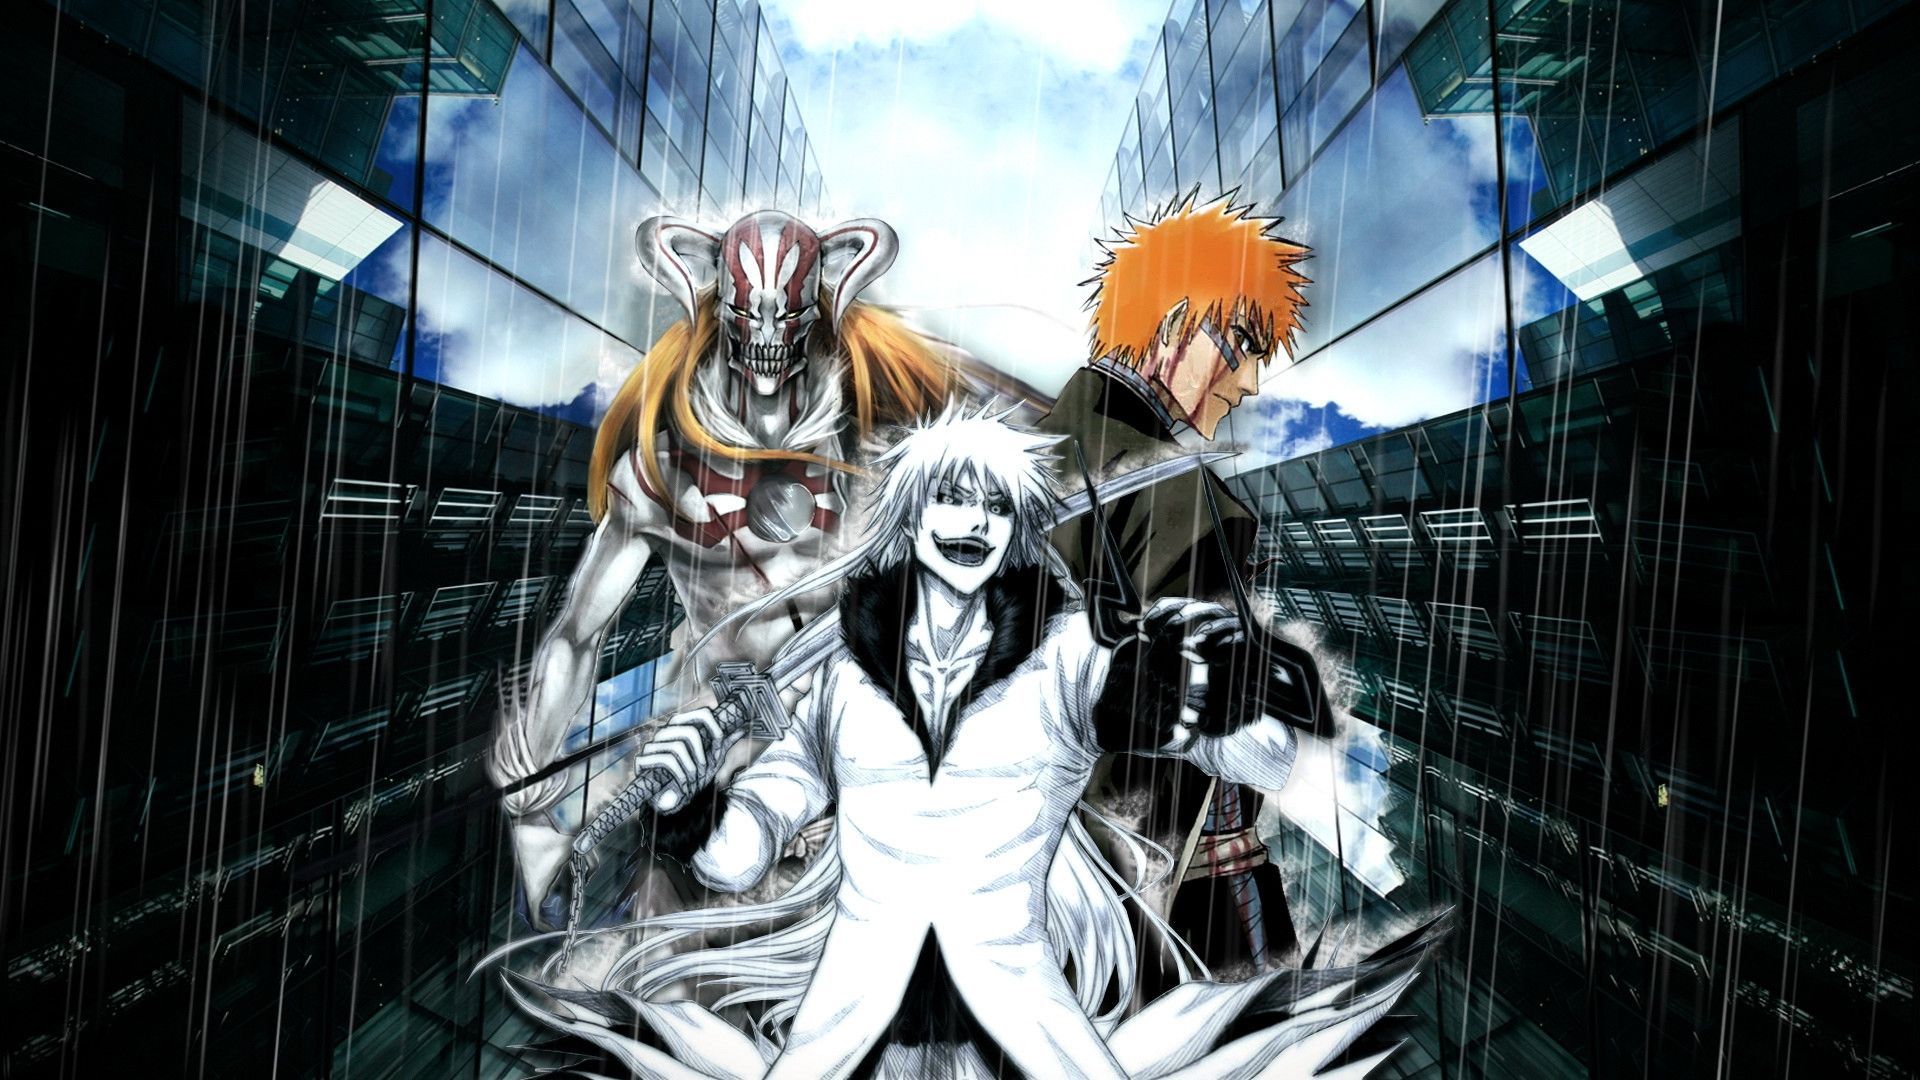 Bleach Poster Anime Wallpaper HD 197 Wallpaper High resolution